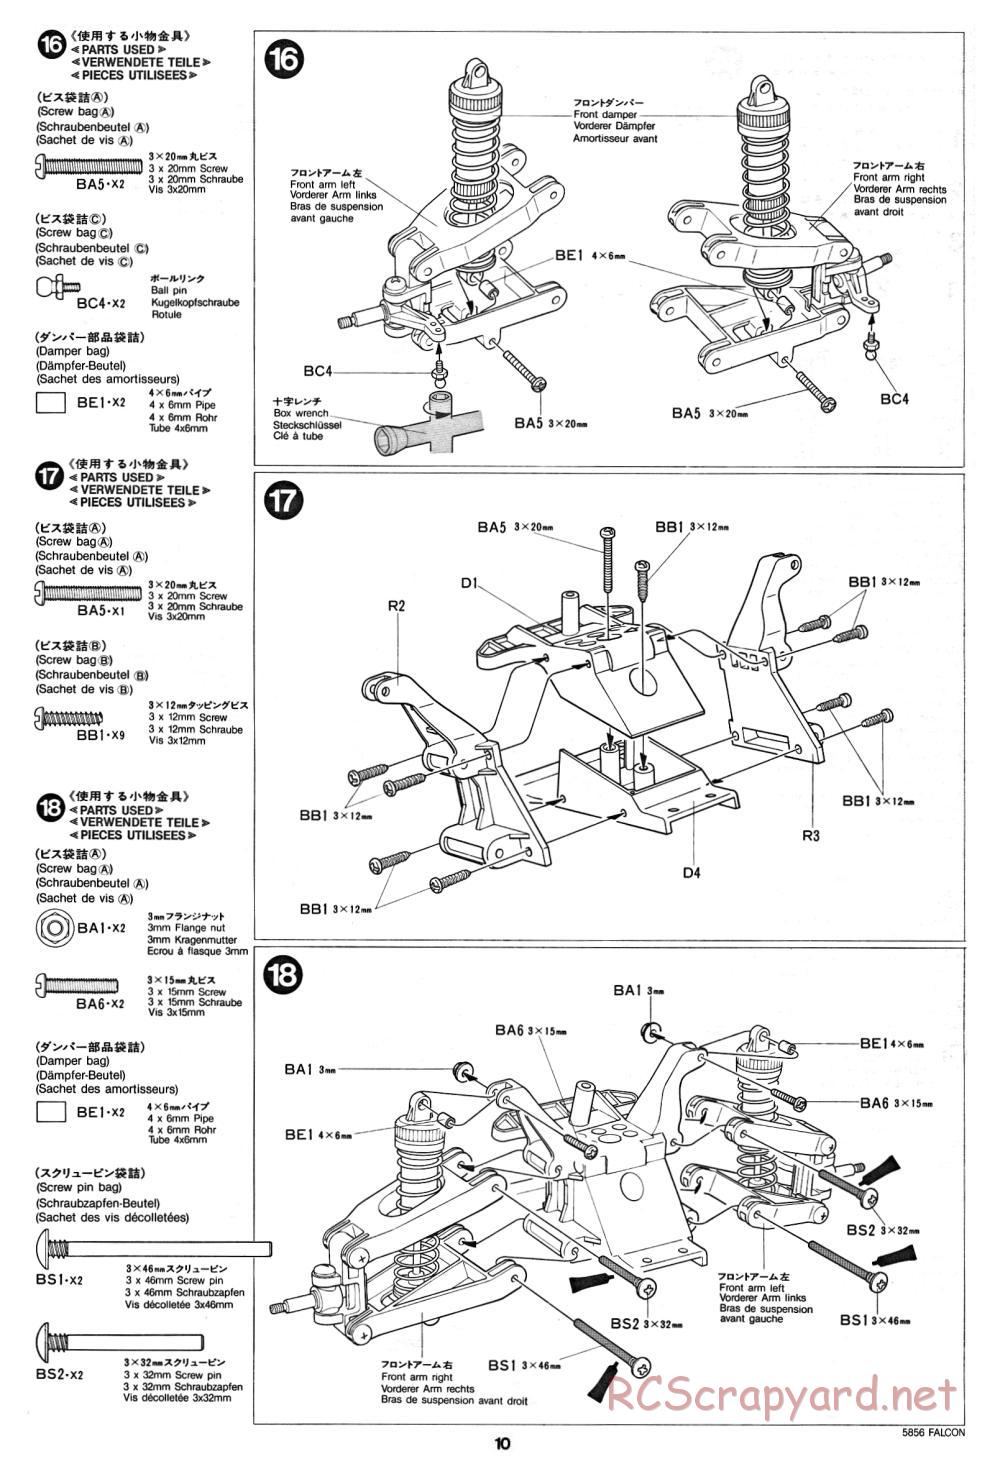 Tamiya - The Falcon - 58056 - Manual - Page 10